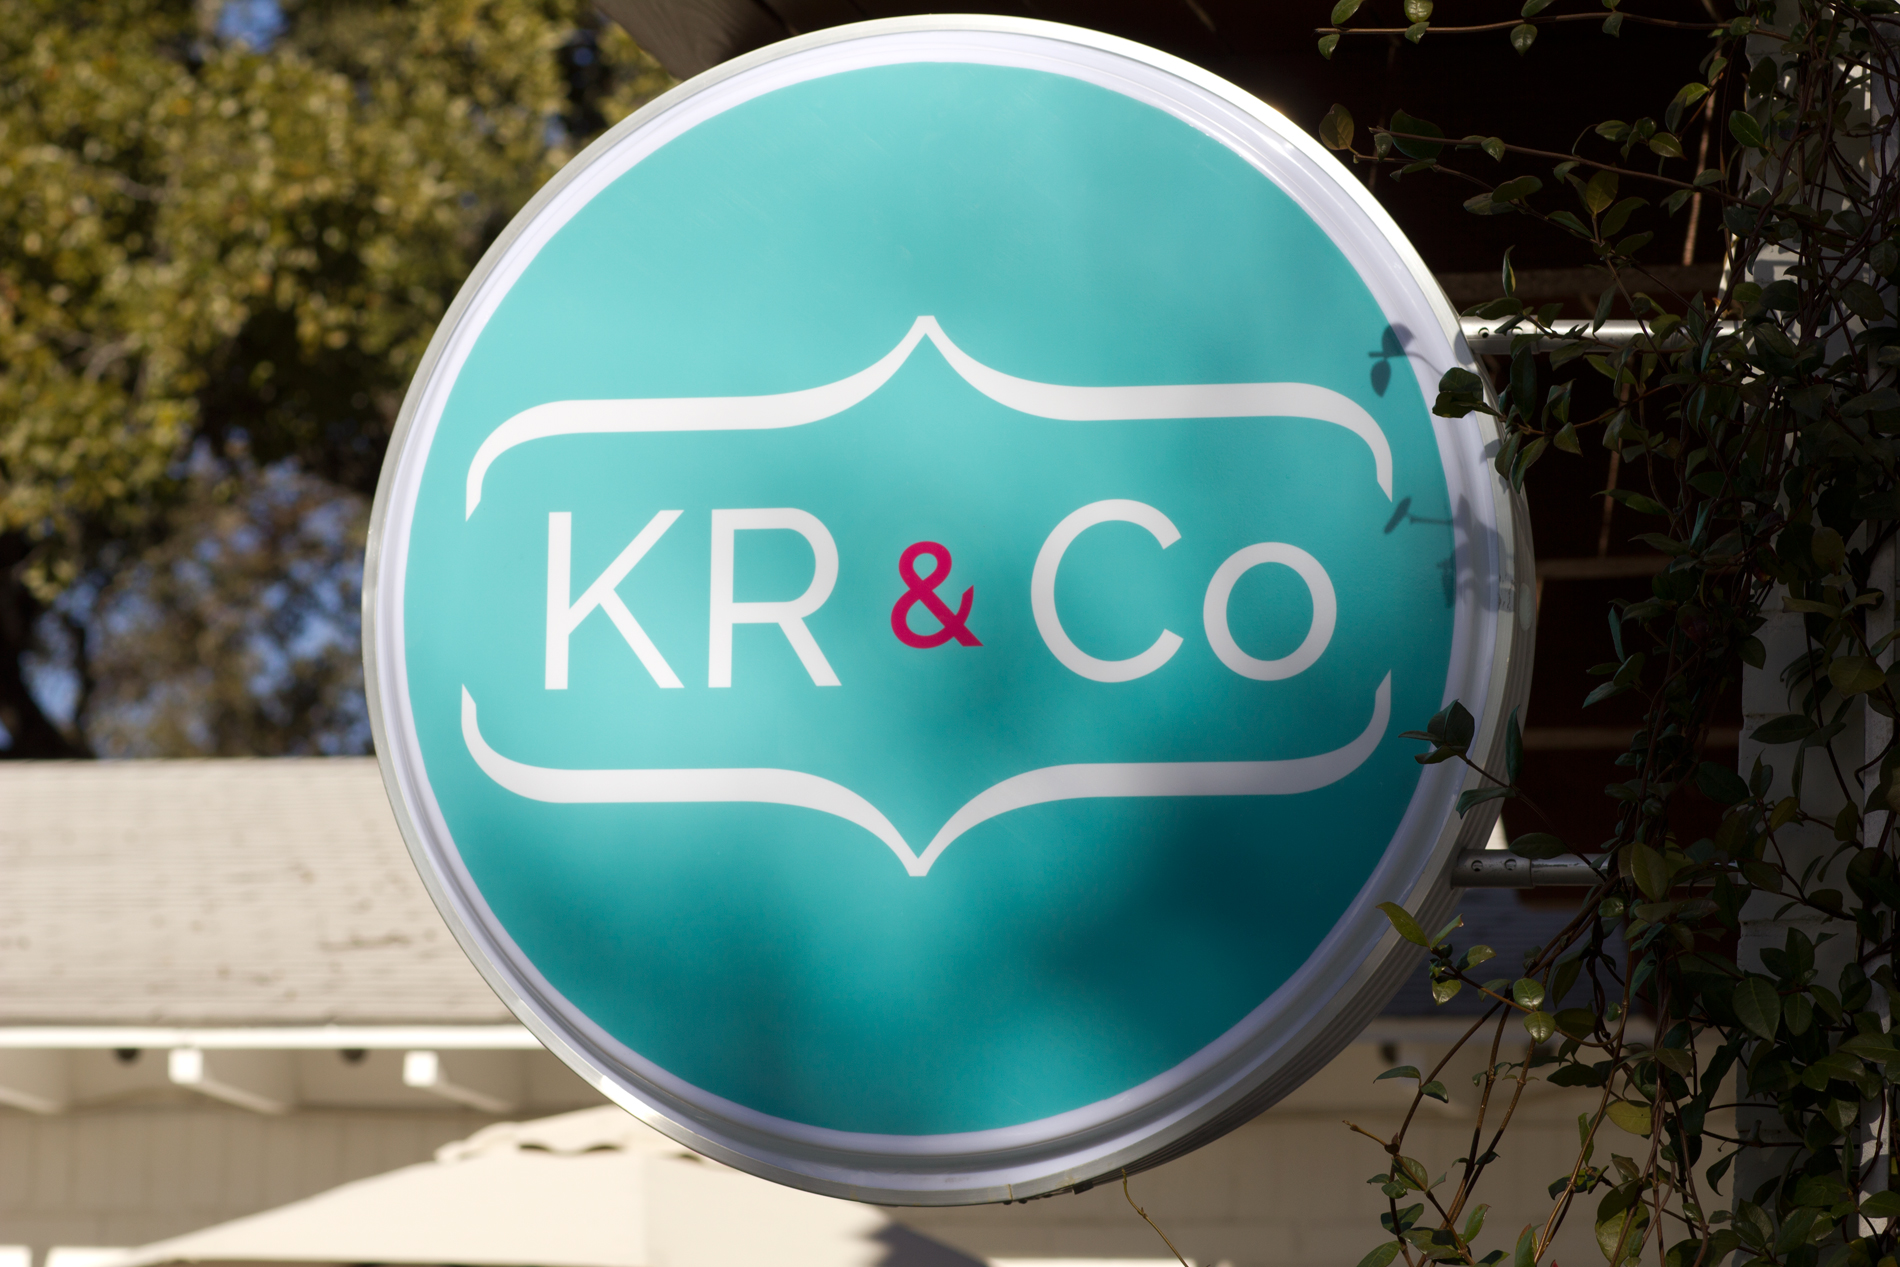 KR&Co sign